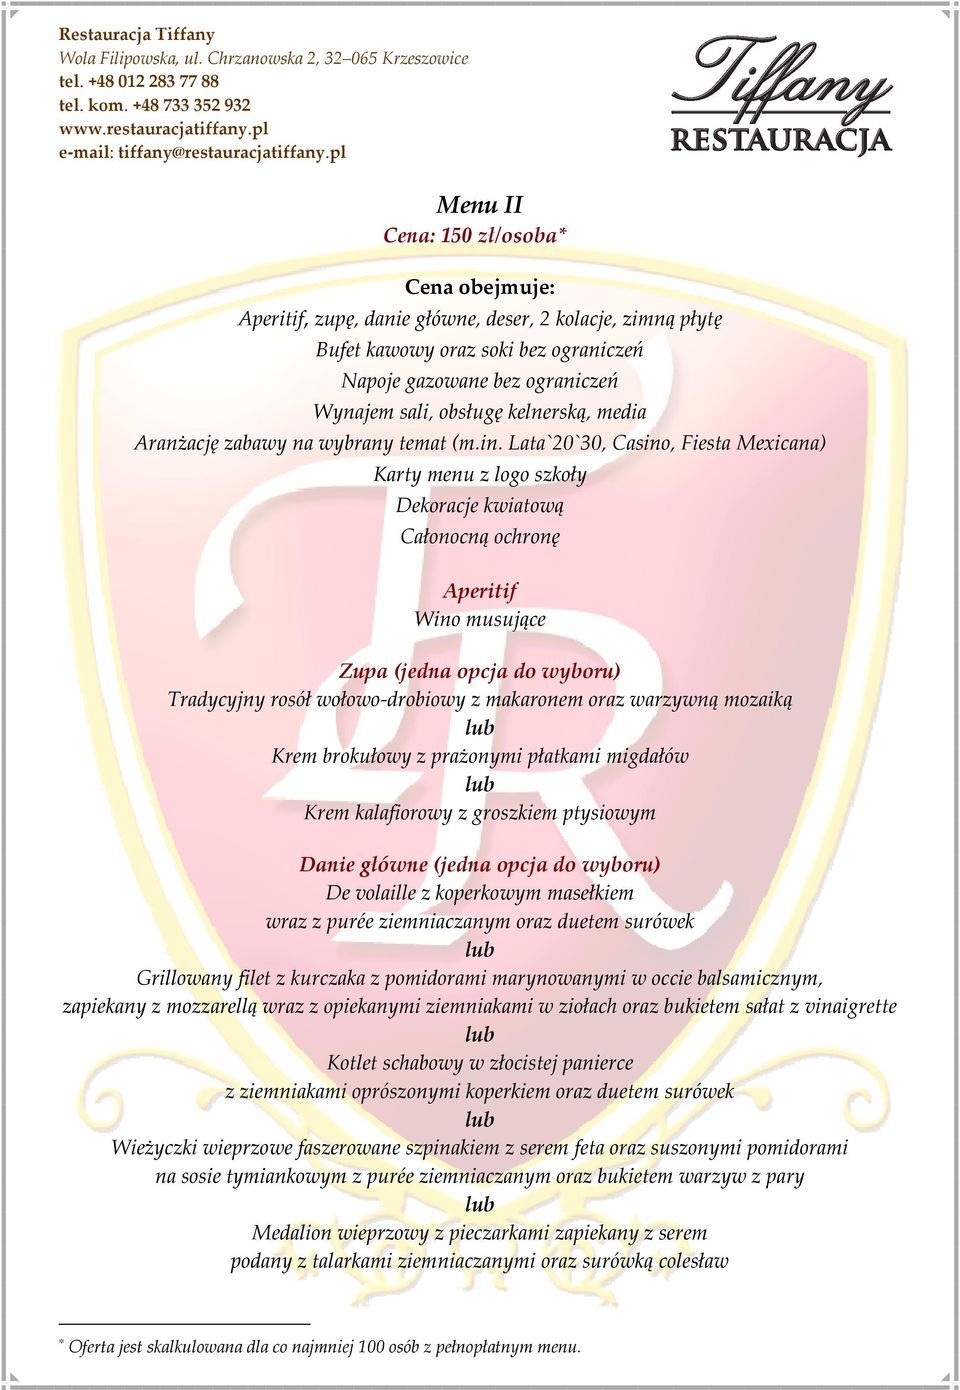 Lata`20`30, Casino, Fiesta Mexicana) Karty menu z logo szkoły Dekoracje kwiatową Całonocną ochronę Aperitif Wino musujące Zupa (jedna opcja do wyboru) Tradycyjny rosół wołowo-drobiowy z makaronem